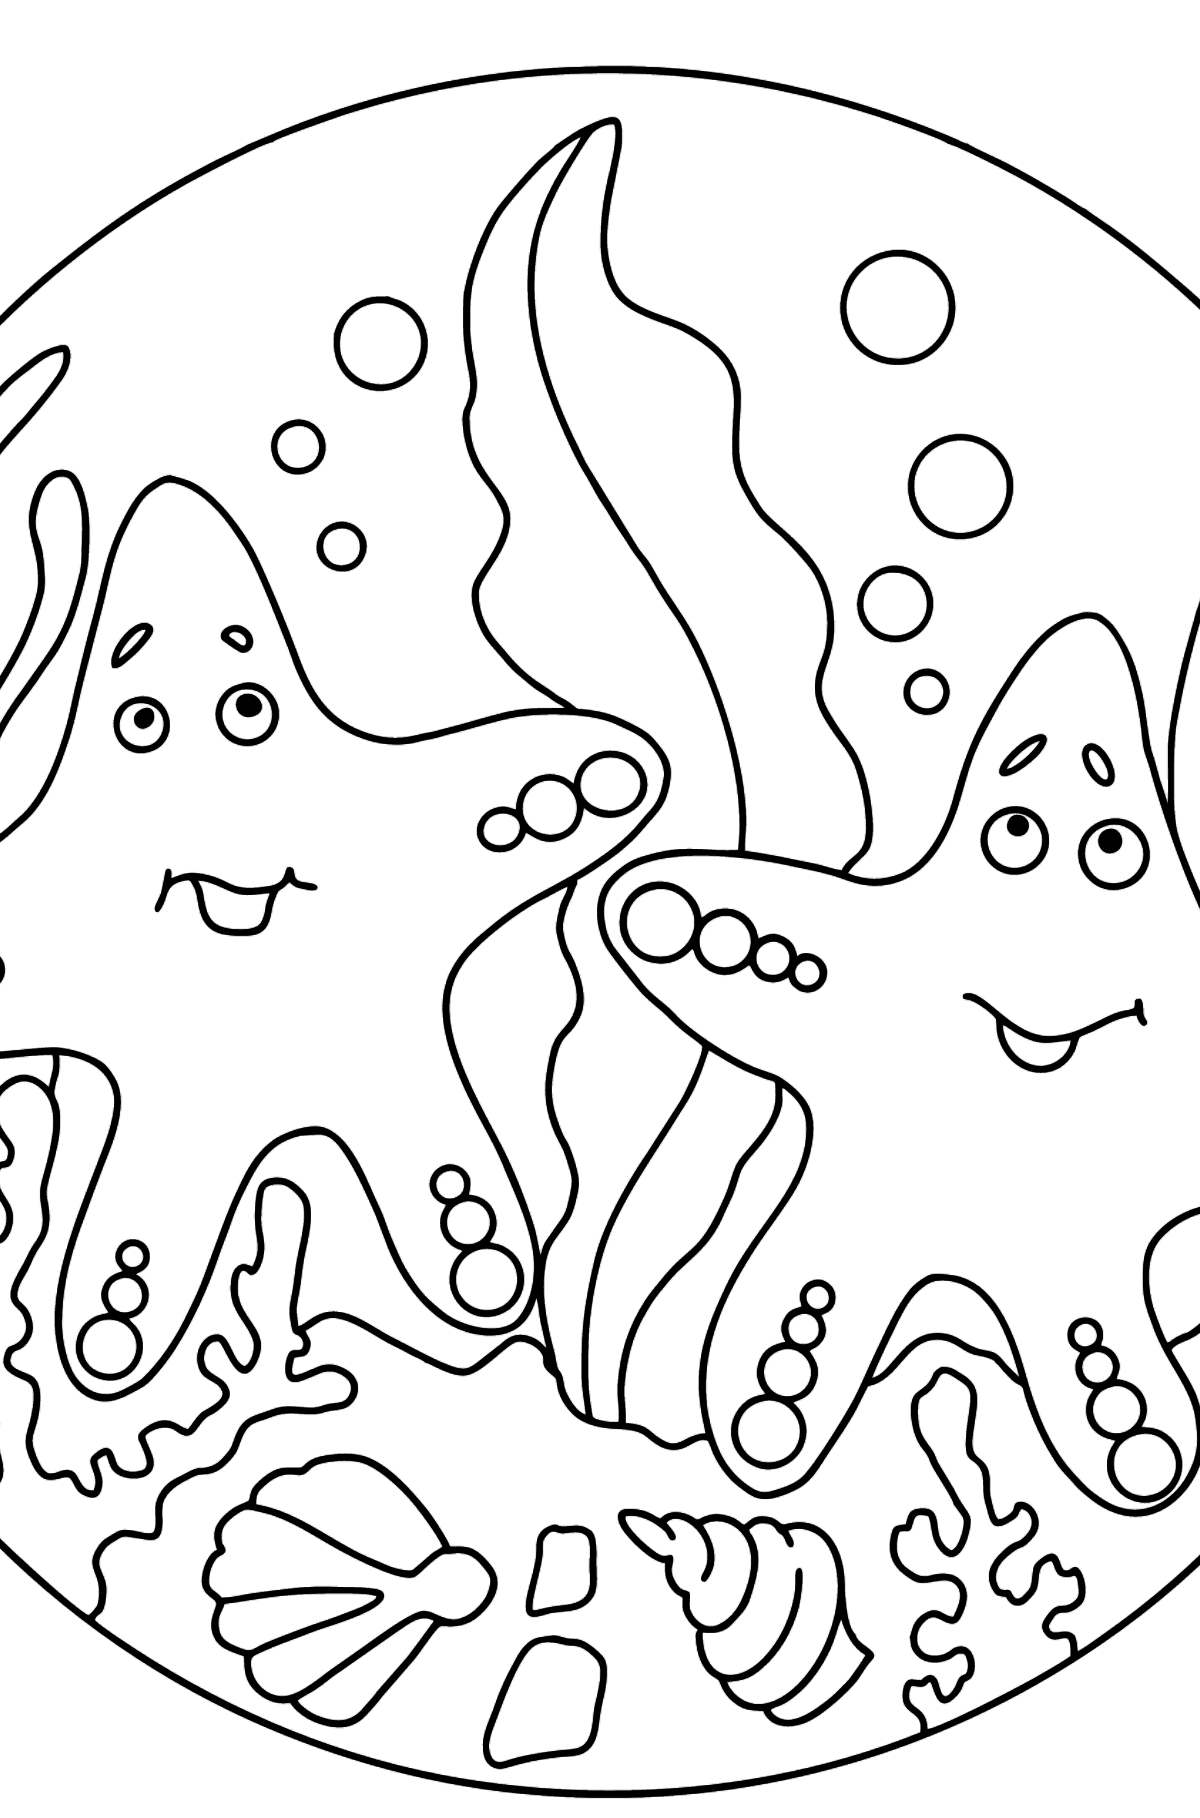 Dibujo para colorear Dos estrellas de mar - Dibujos para Colorear para Niños